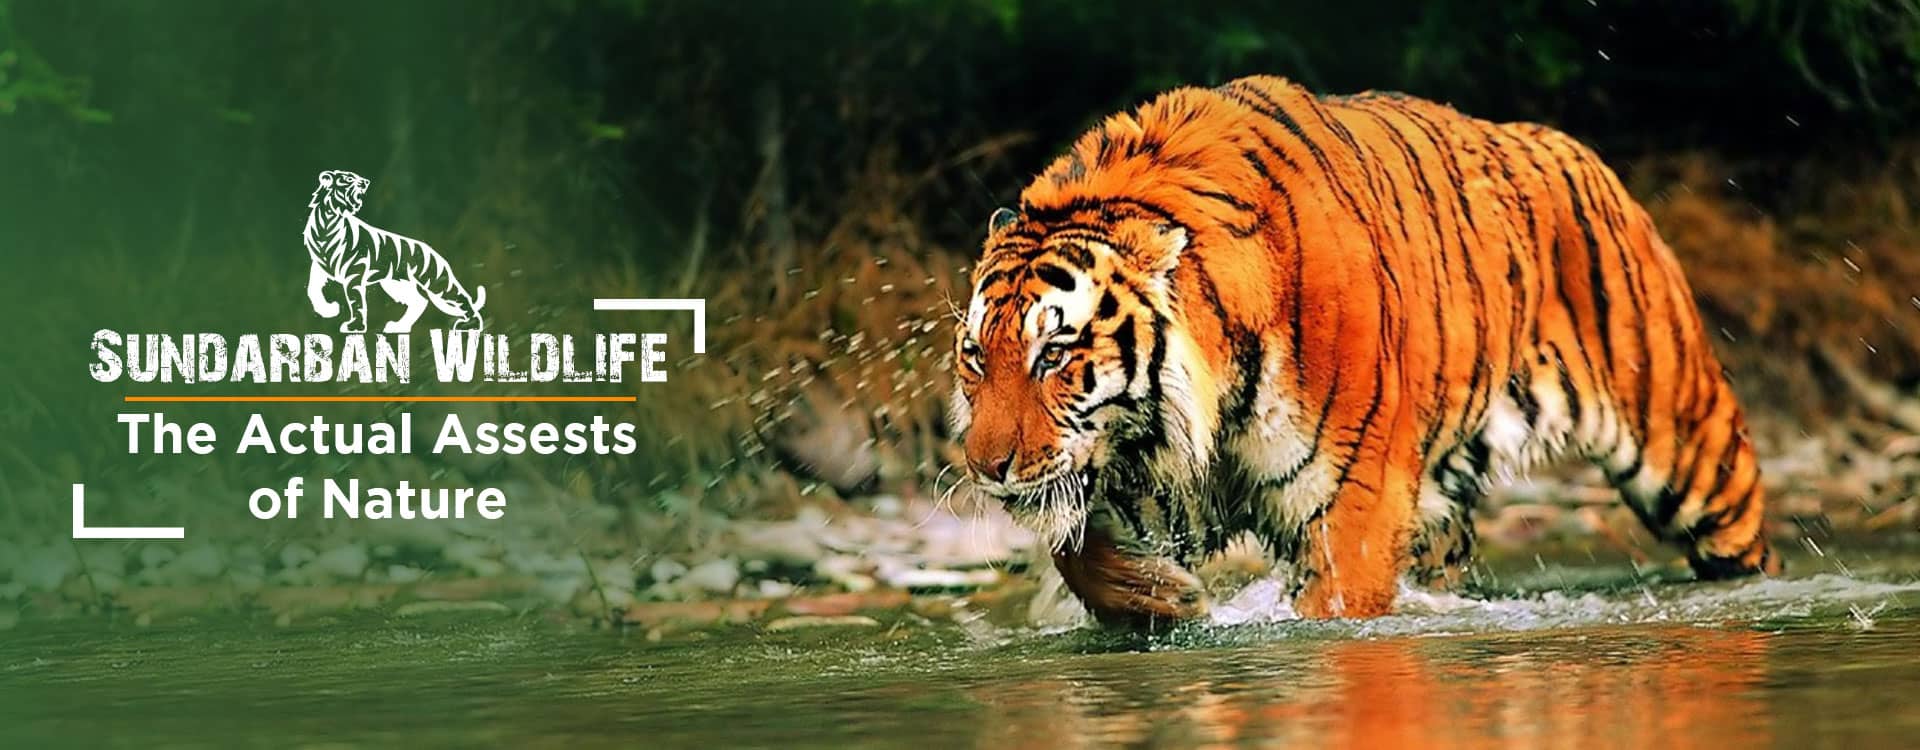 Sundarban Wildlife